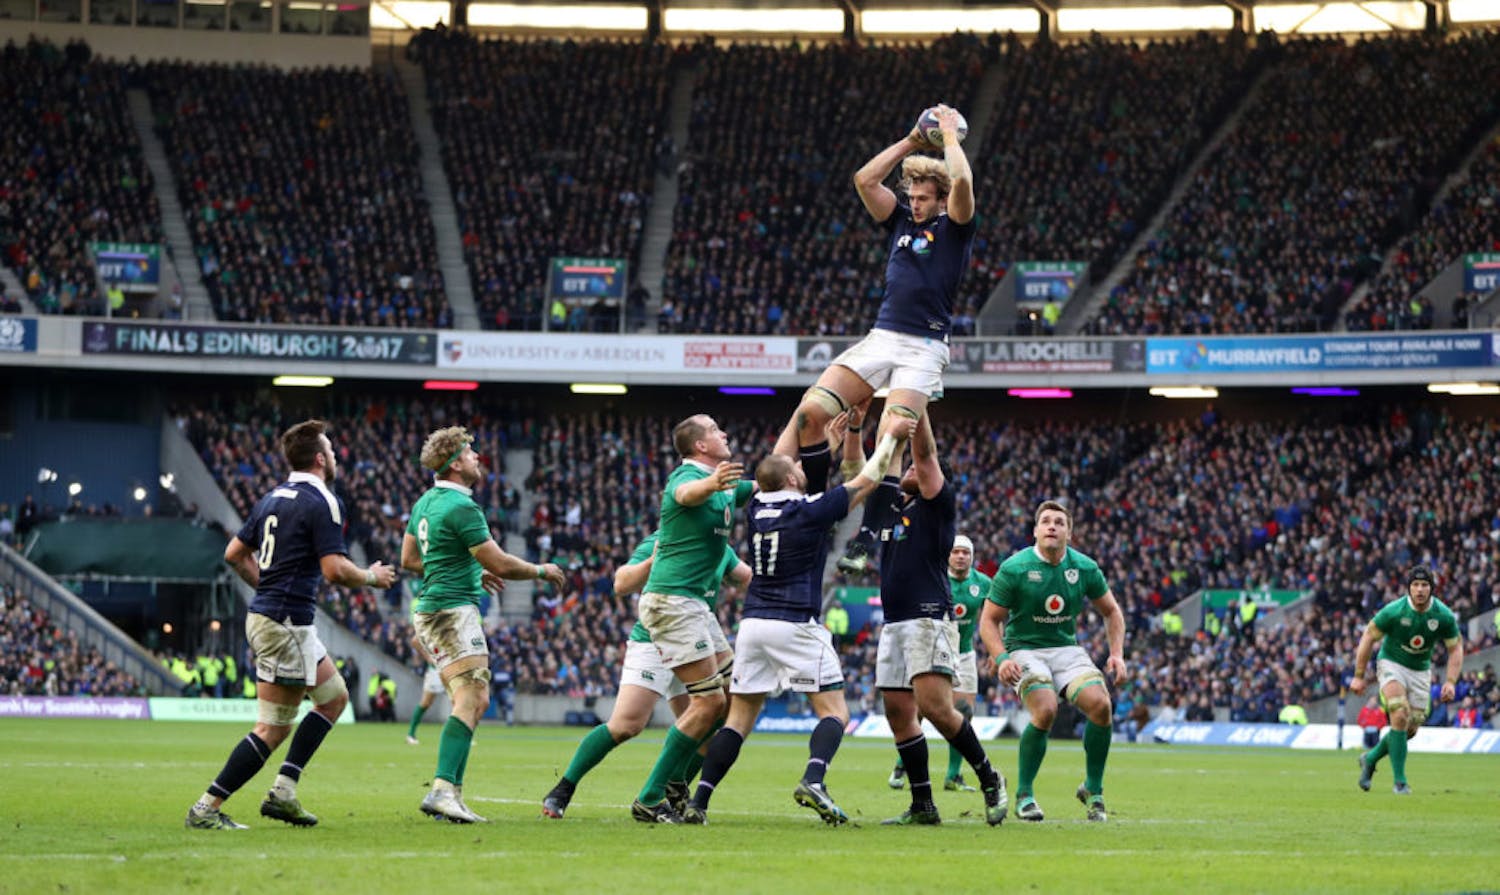 OTB AM | GAA finance, Scottish rugby threat, Tygart on Jon Jones